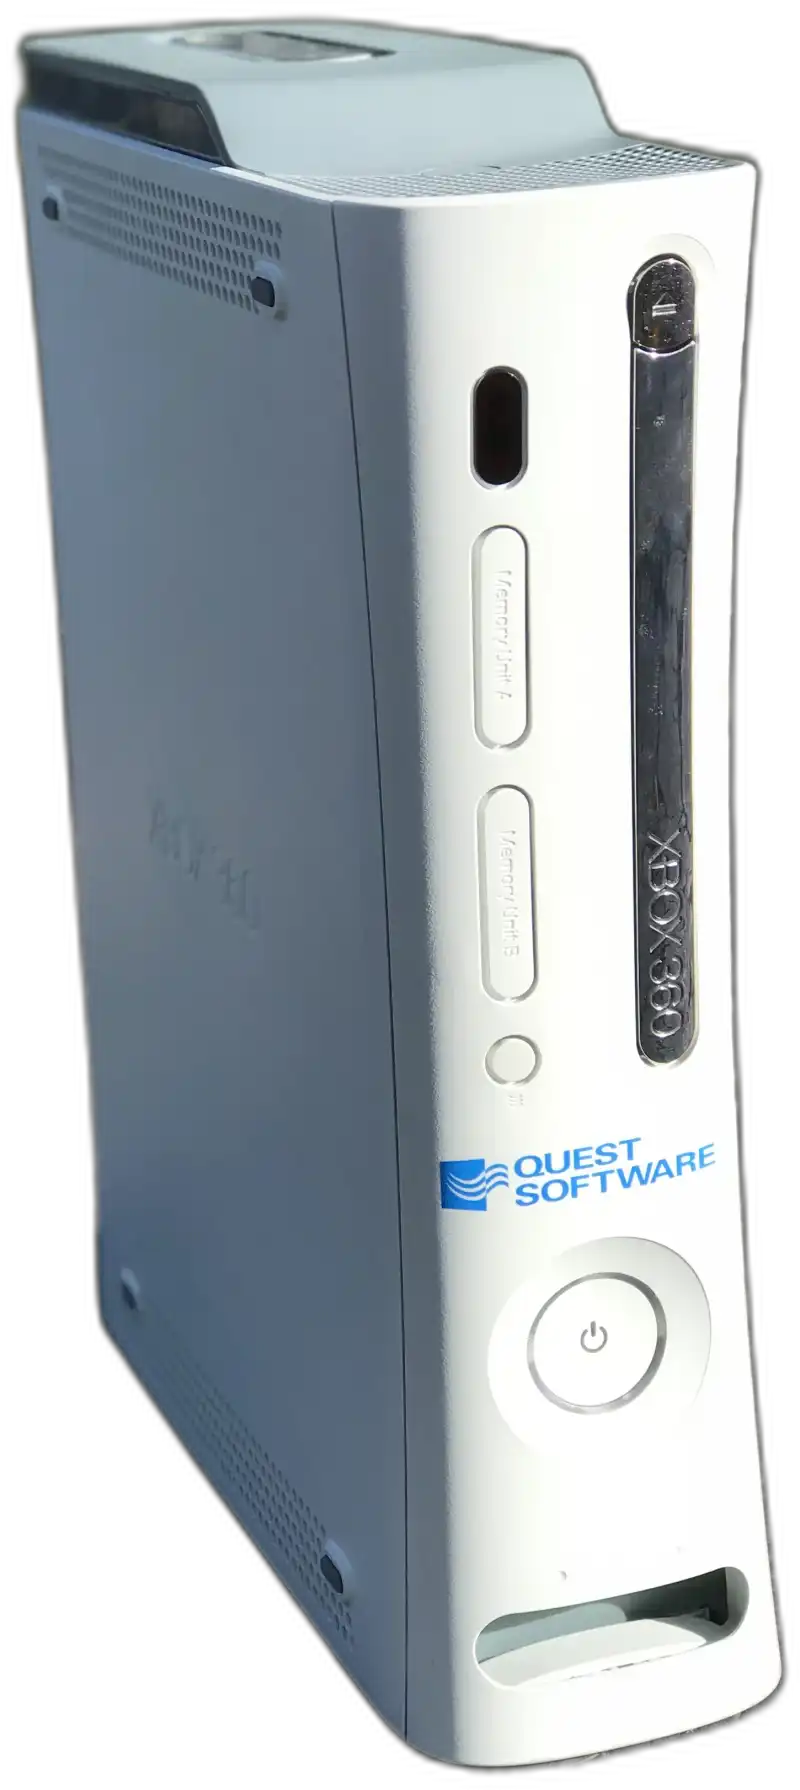  Microsoft Xbox 360 Quest Software Console